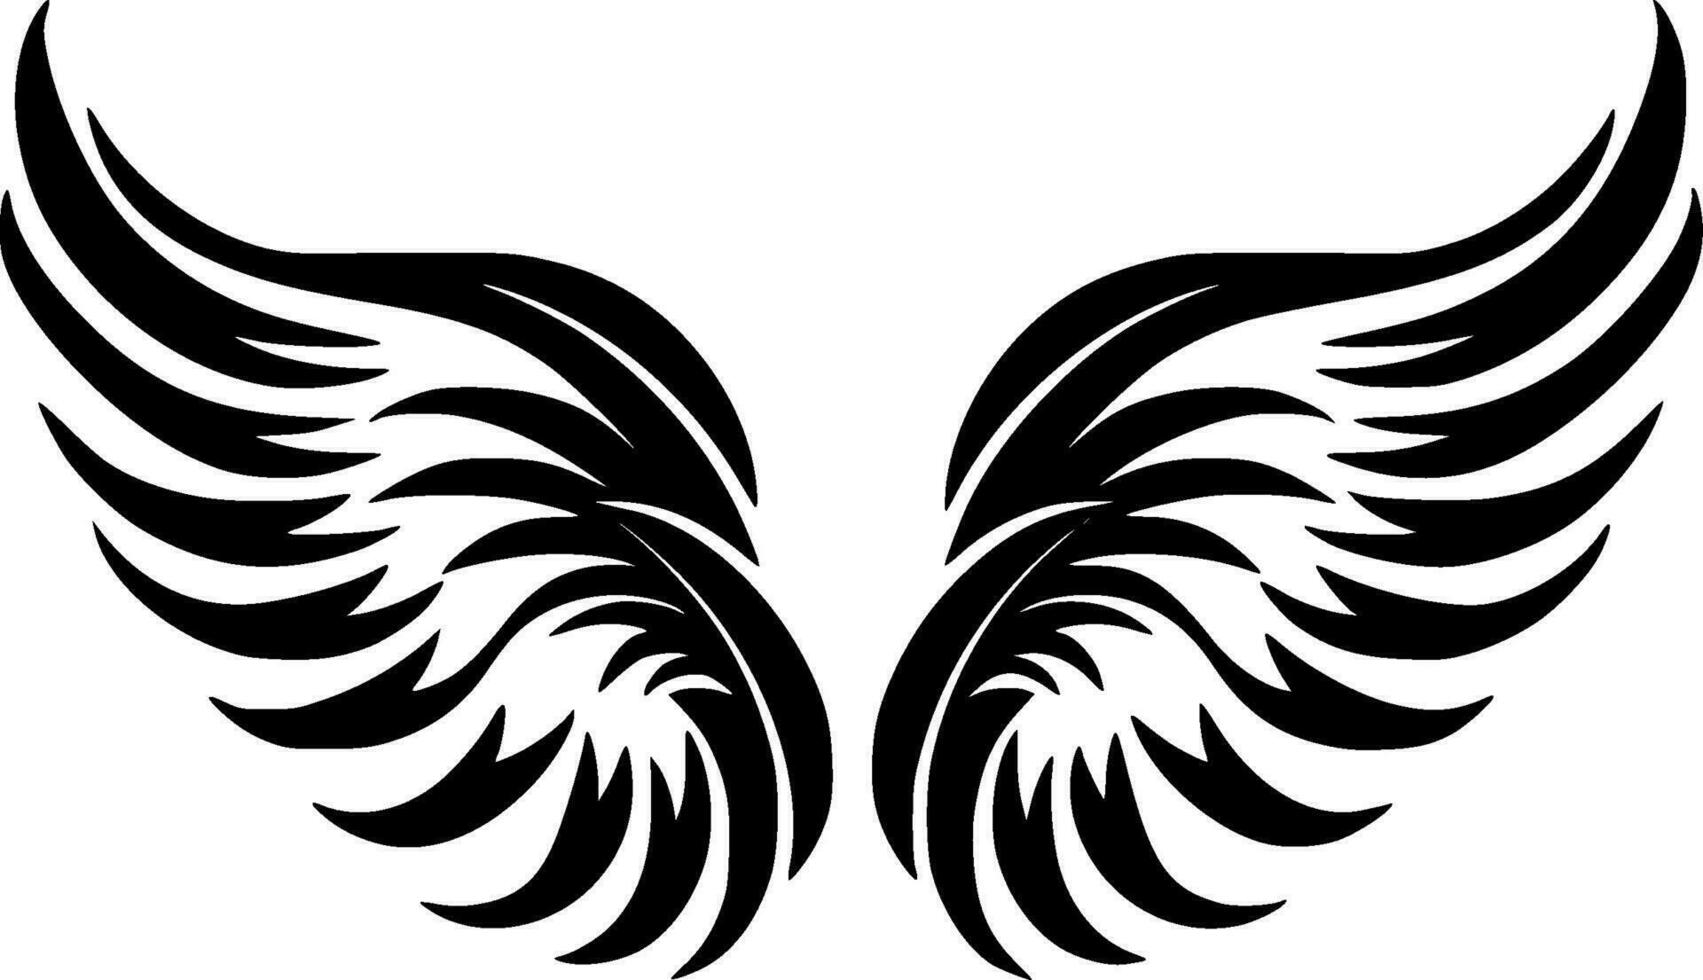 Engel Flügel, minimalistisch und einfach Silhouette - - Vektor Illustration